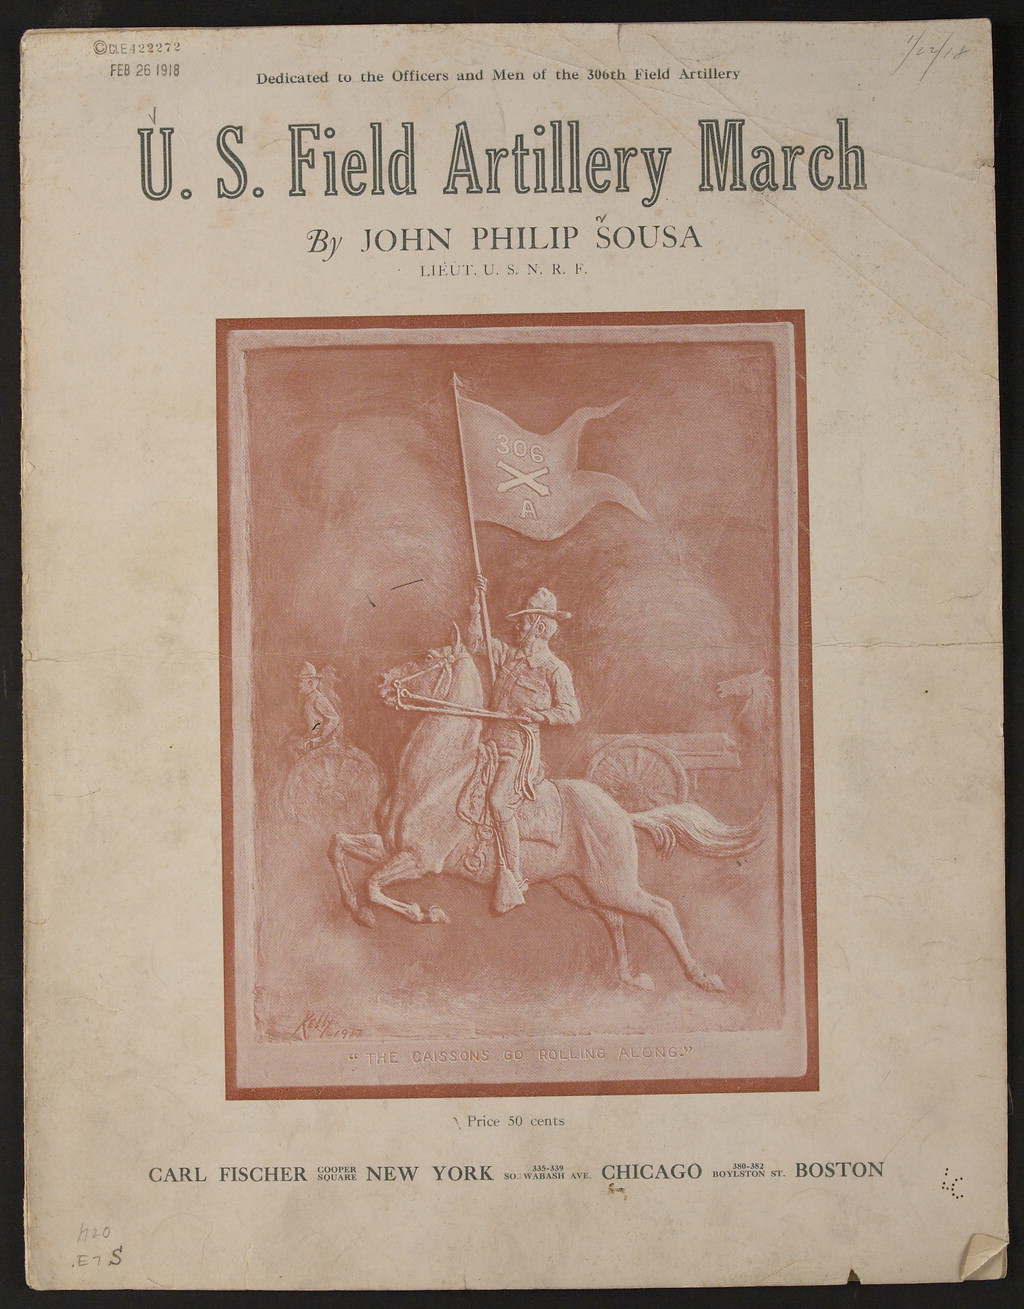 U.S. Artillery March Sheet Music Cover.jpg